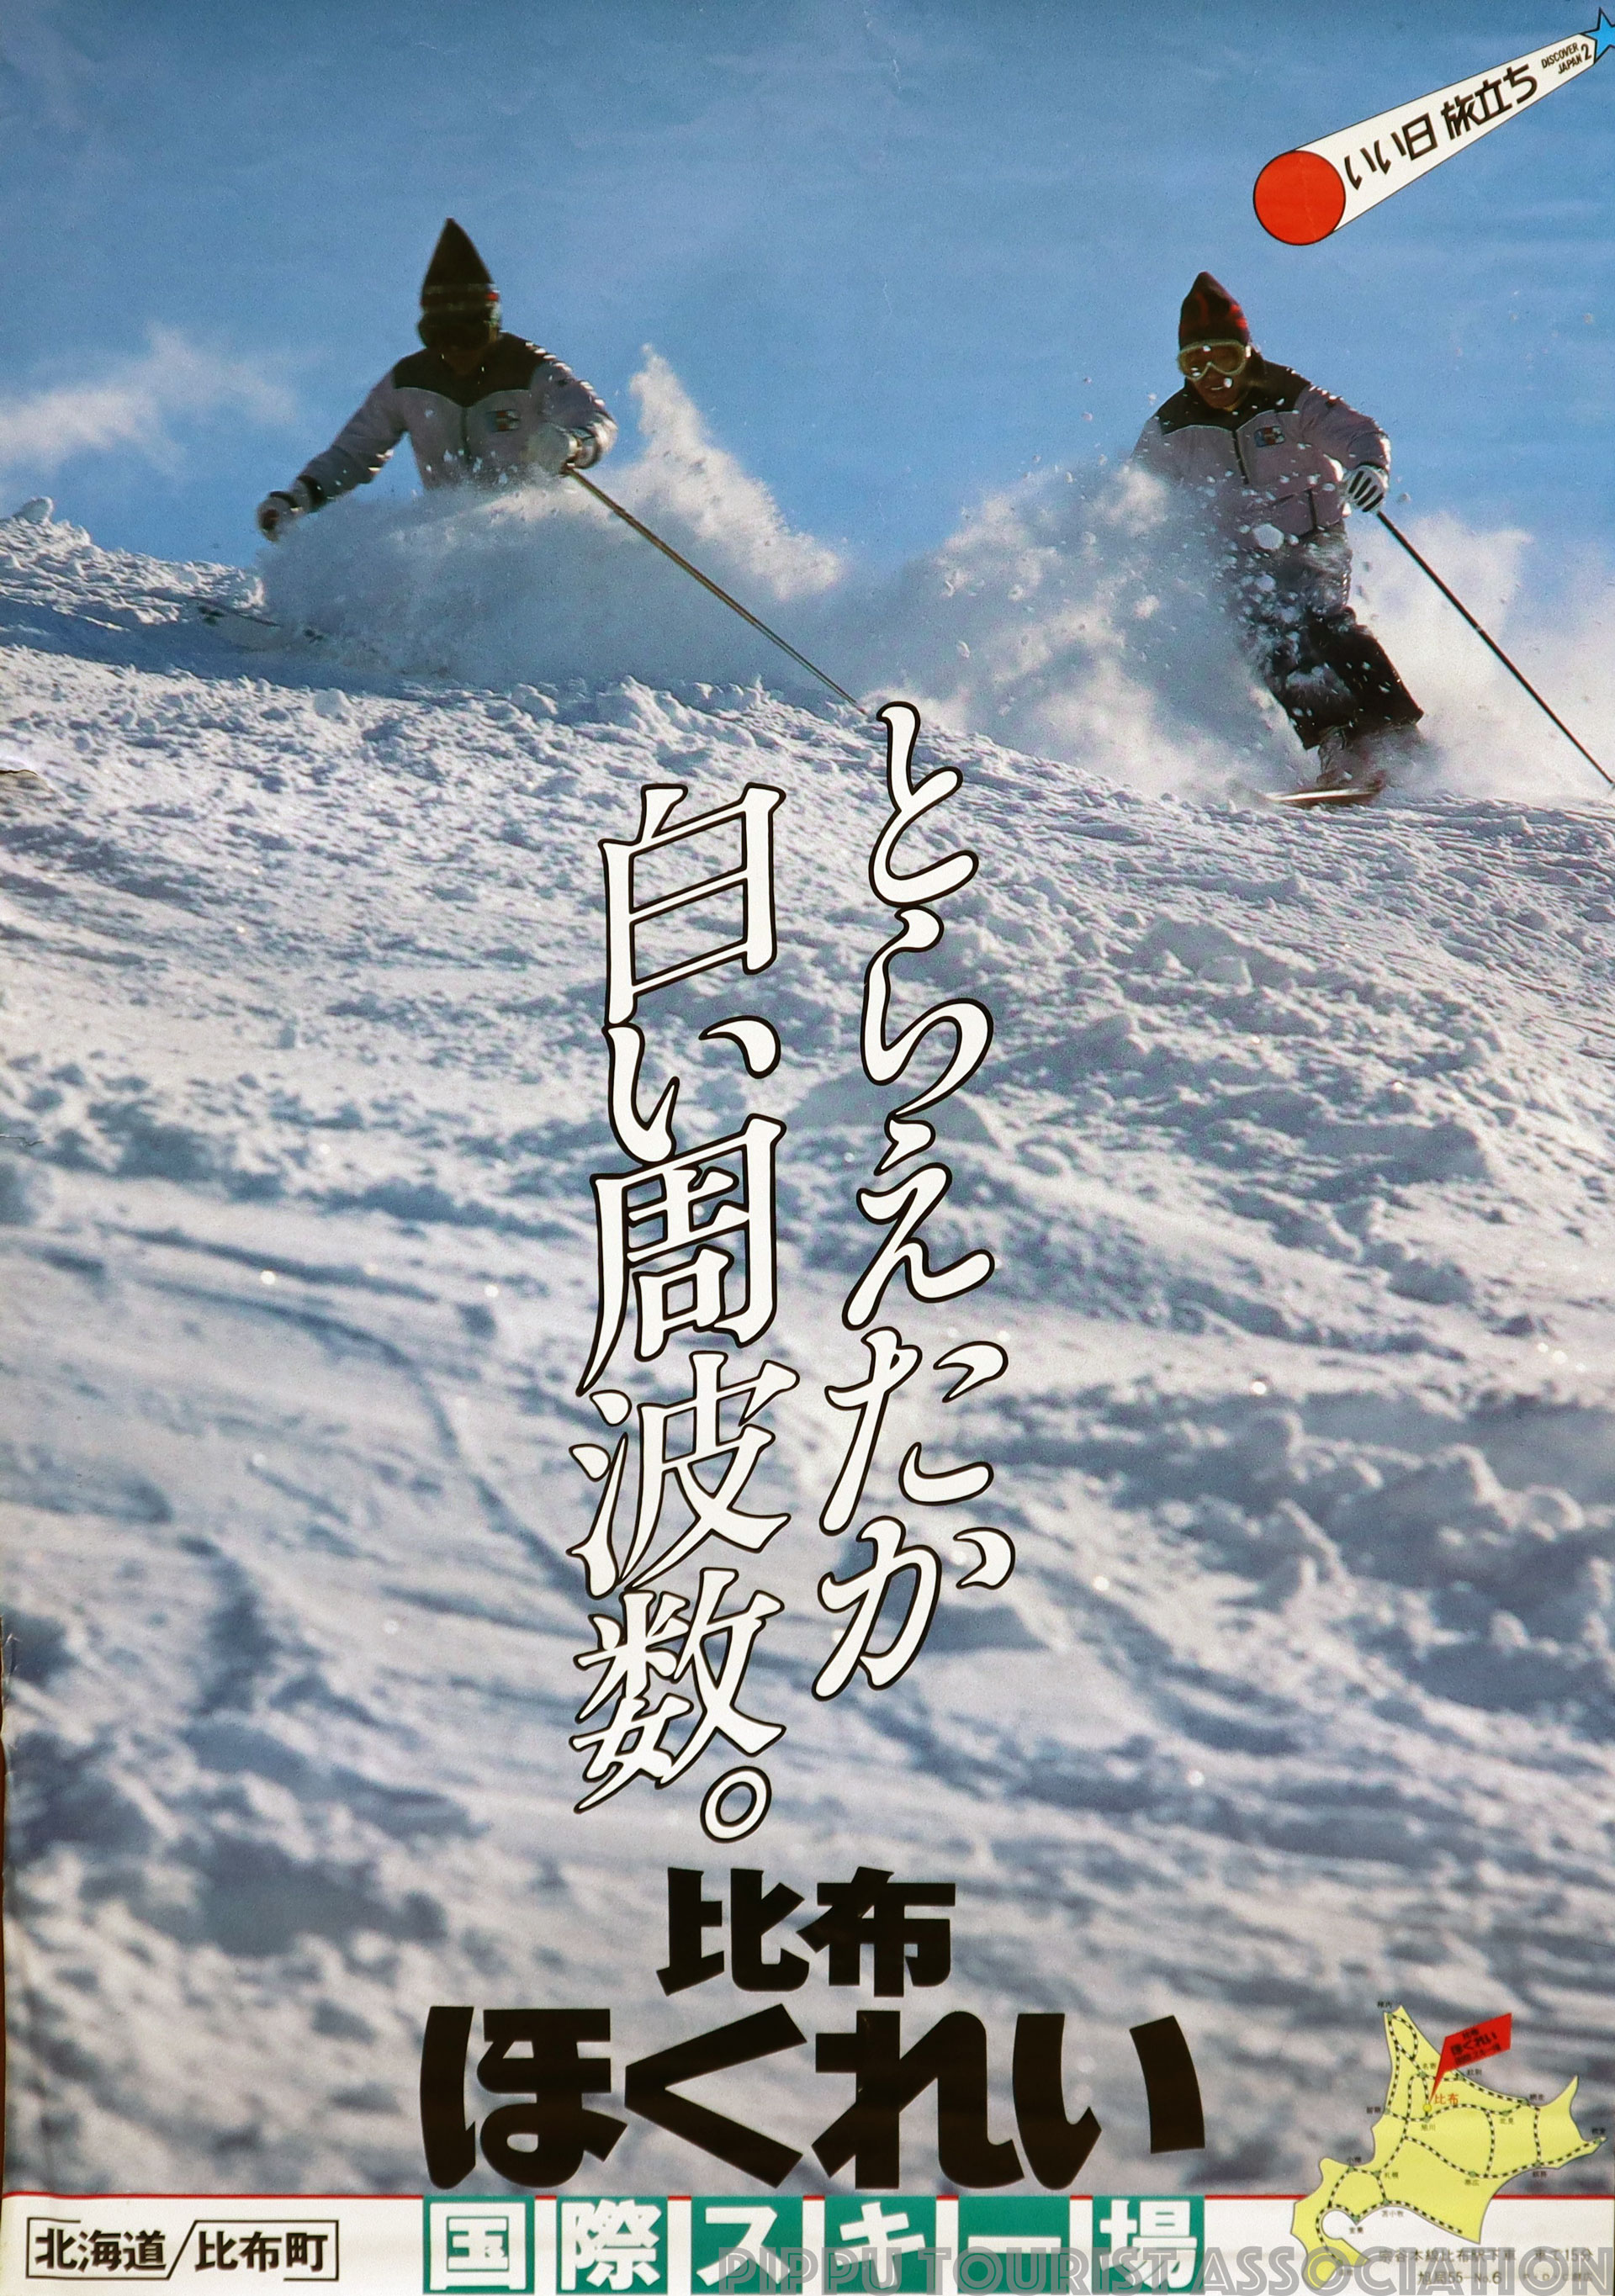 昭和55年比布ほくれい国際スキー場